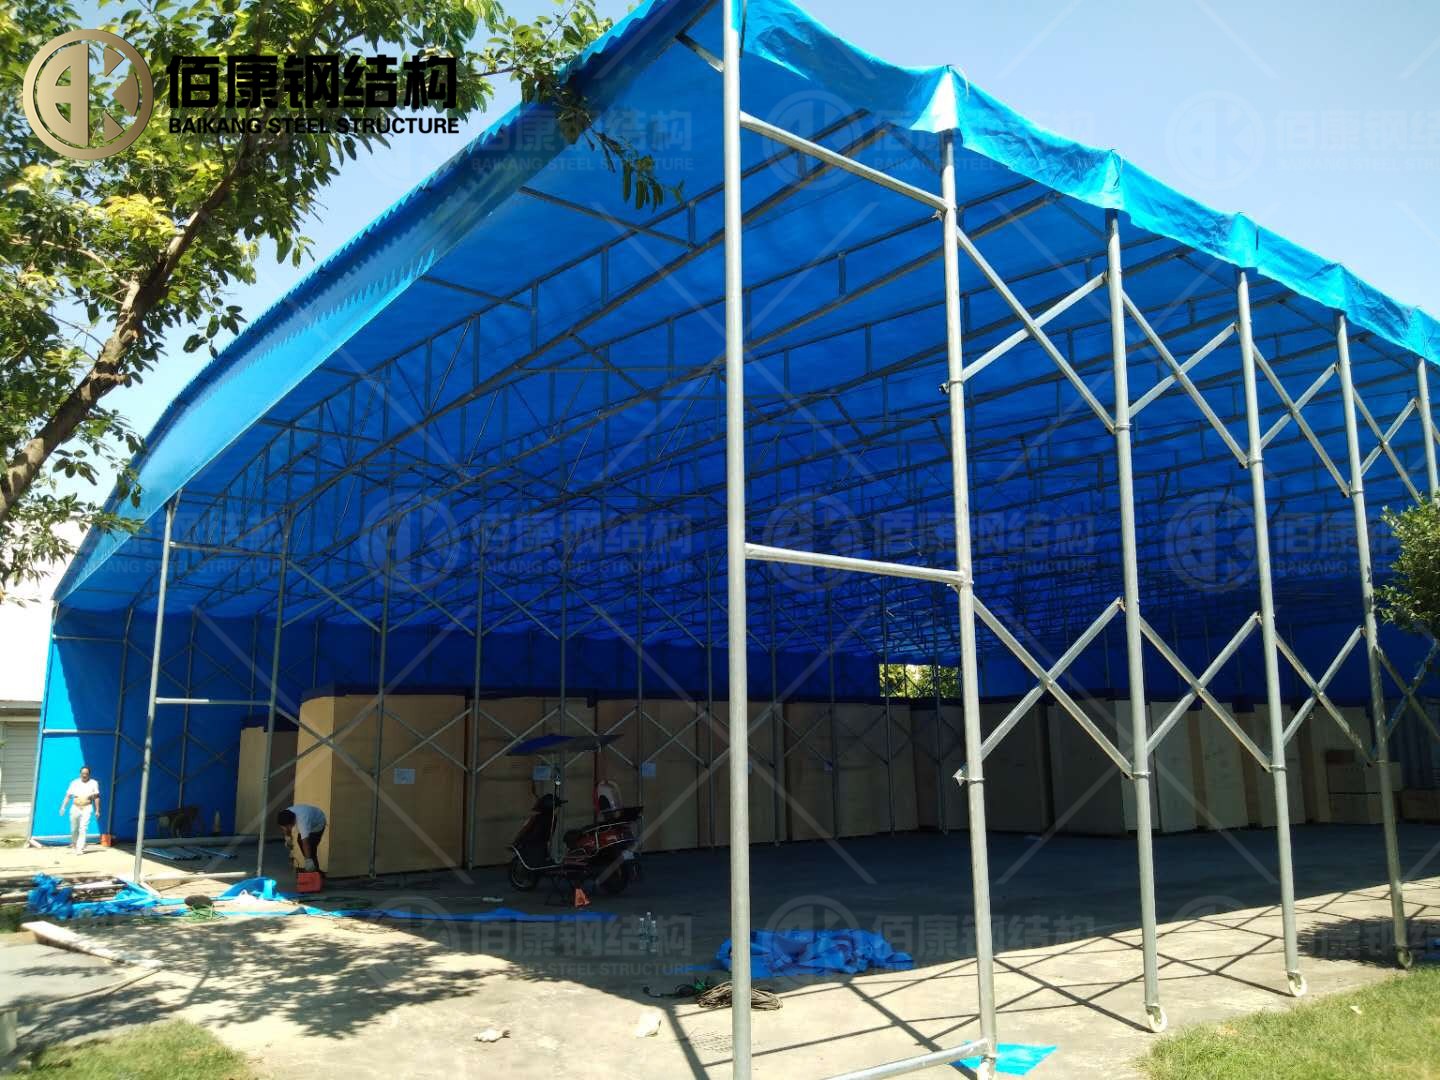 承接定制安装各类推拉雨棚,推拉帐篷,伸缩帐篷,伸缩雨棚,移动帐篷雨篷